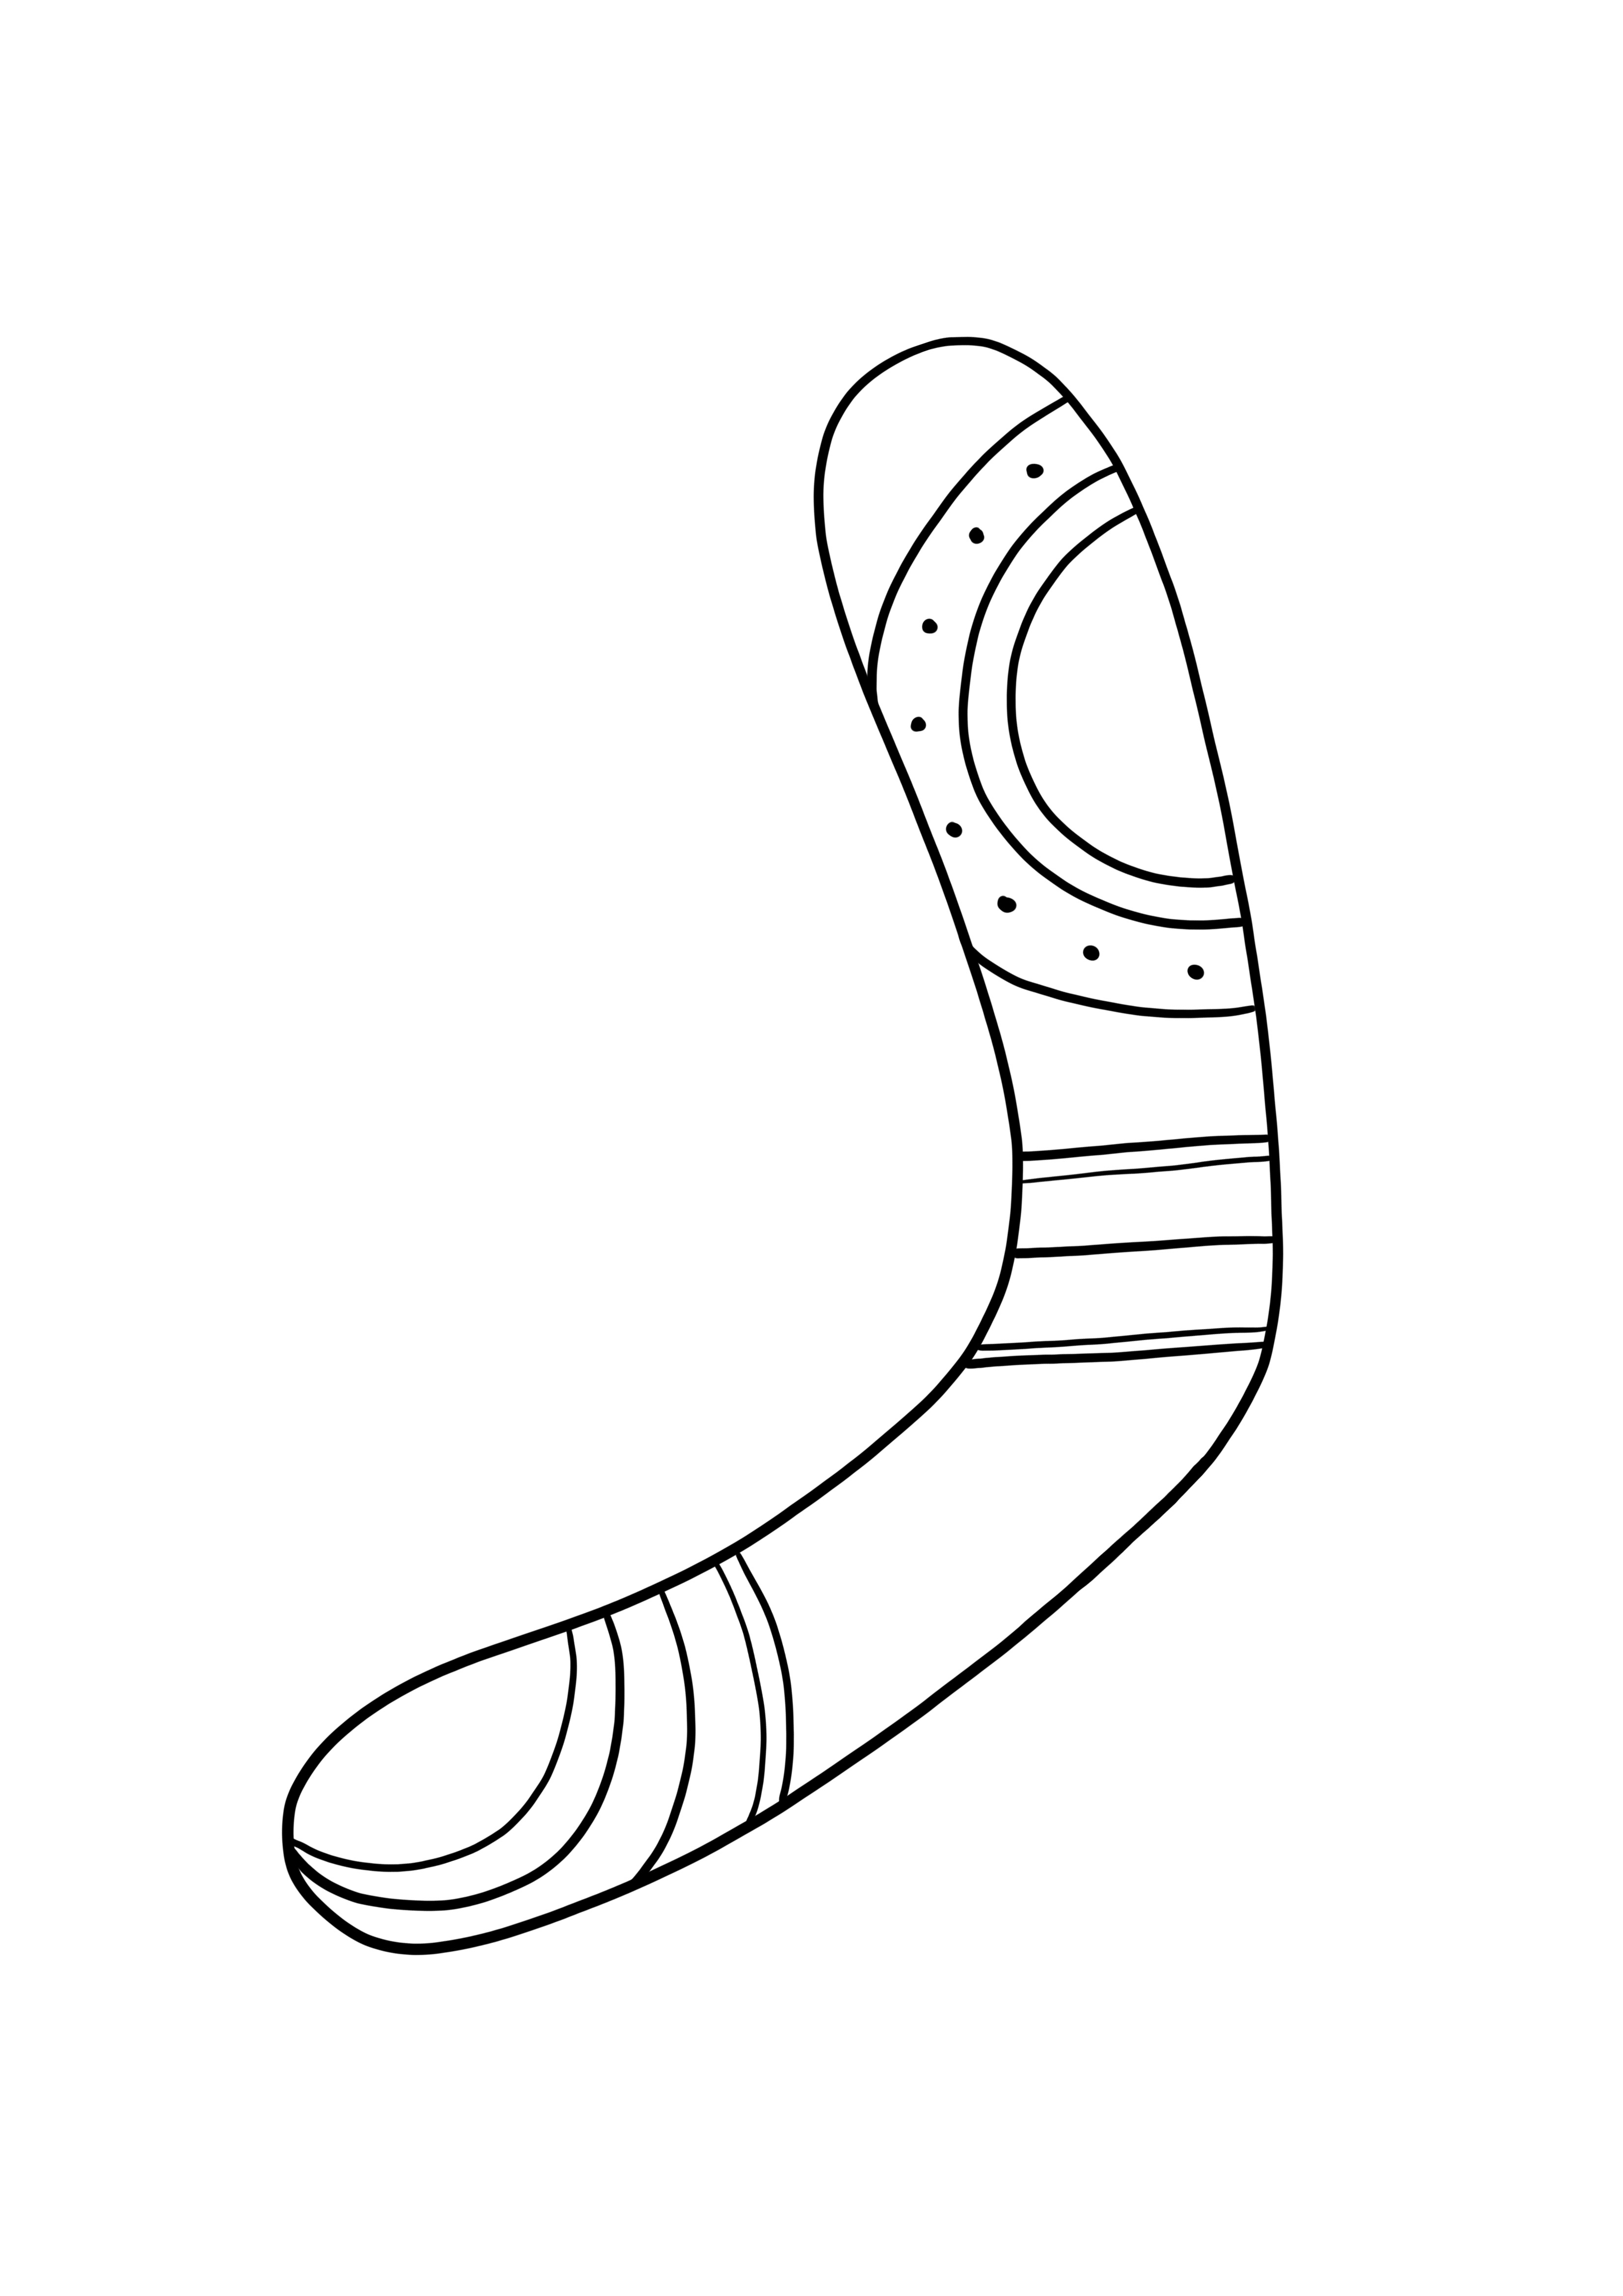 Boomerang à télécharger ou imprimer gratuitement pour les enfants